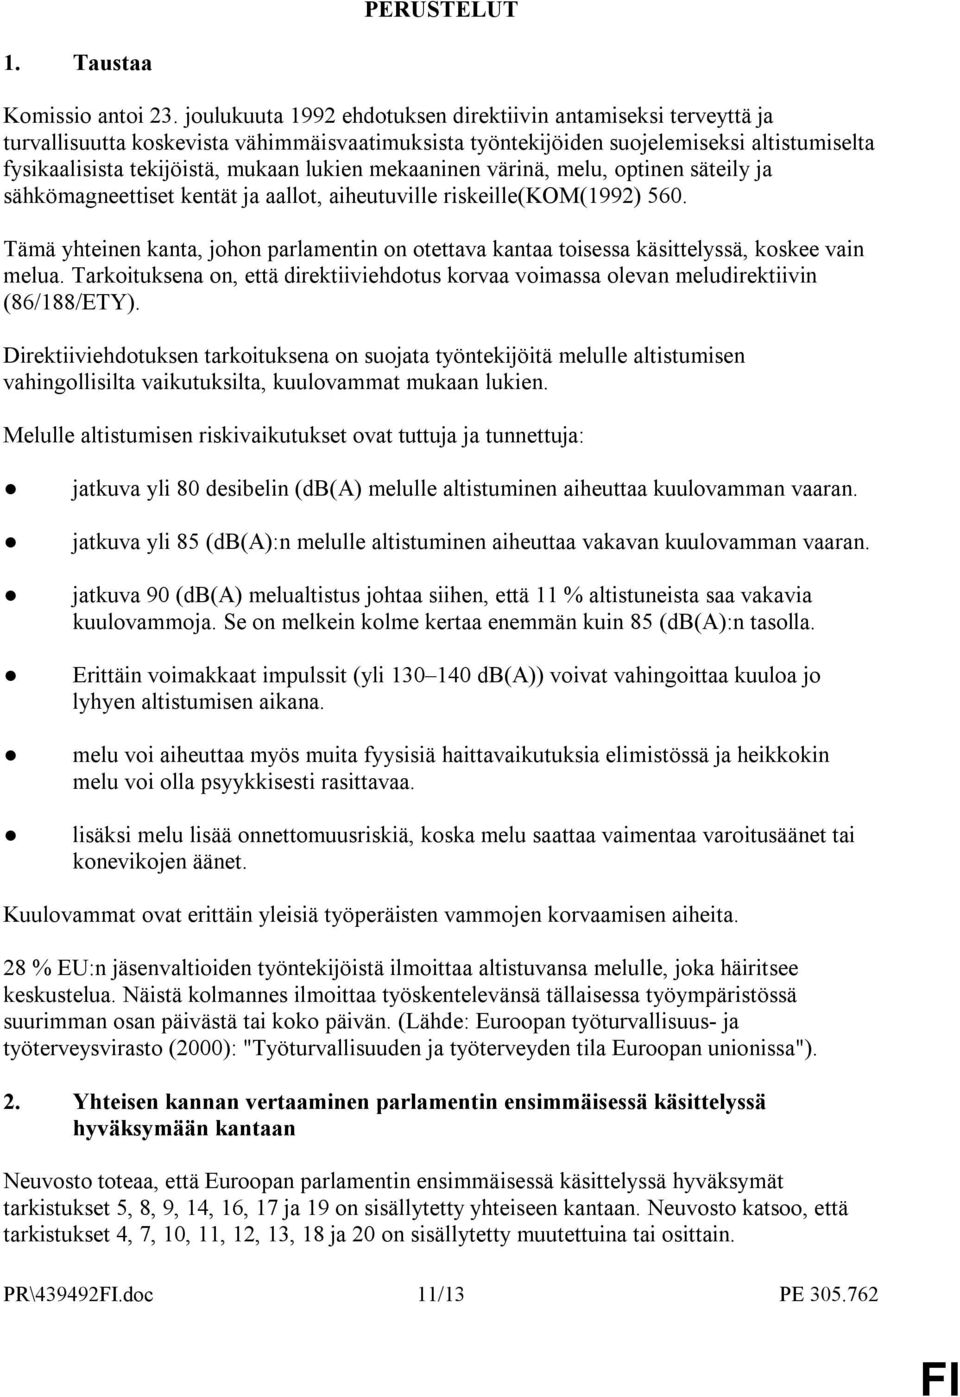 mekaaninen värinä, melu, optinen säteily ja sähkömagneettiset kentät ja aallot, aiheutuville riskeille(kom(1992) 560.